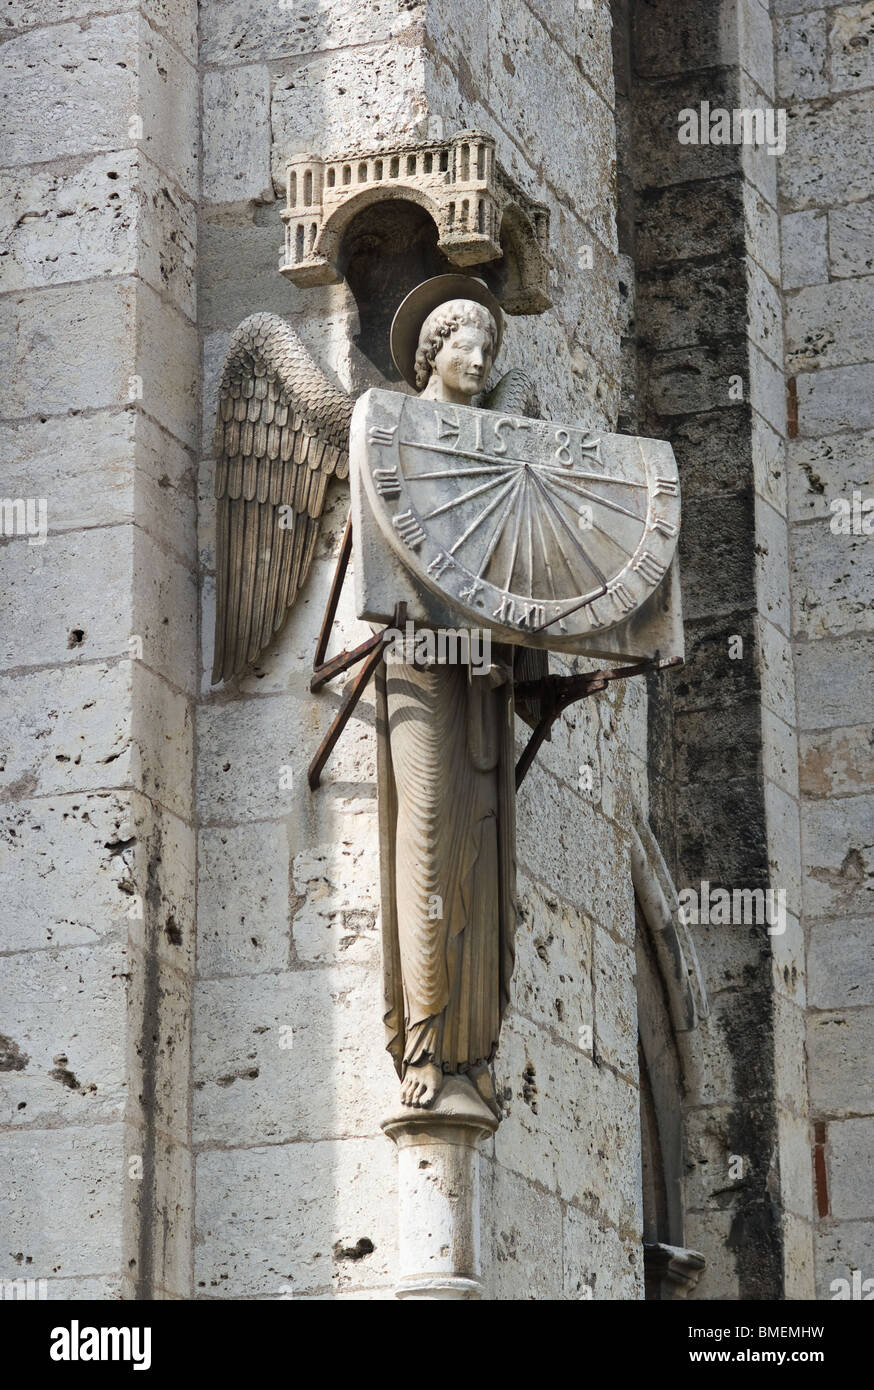 SCULPTURES DE LA cathédrale de Chartres Chartres, France Banque D'Images